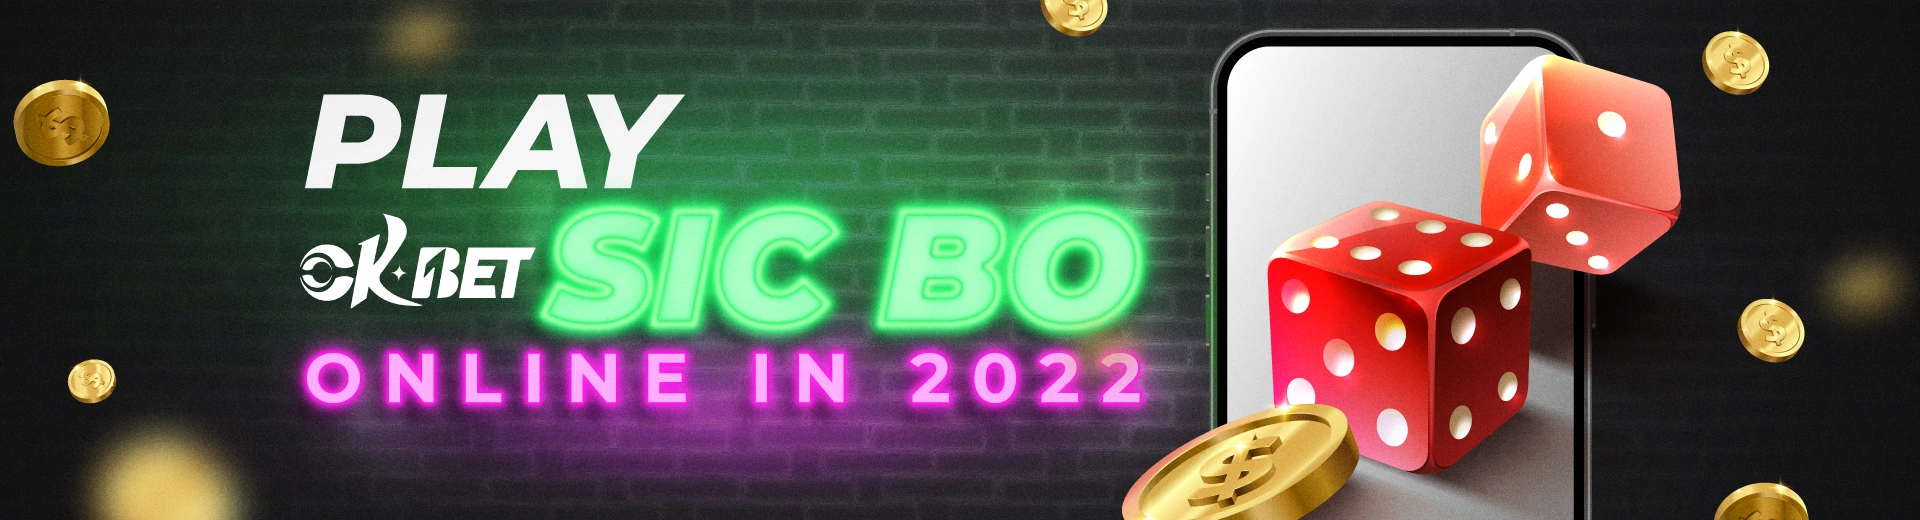 The Best Way to Play OKBET Sic Bo Online in 2022 - OKBET online casino